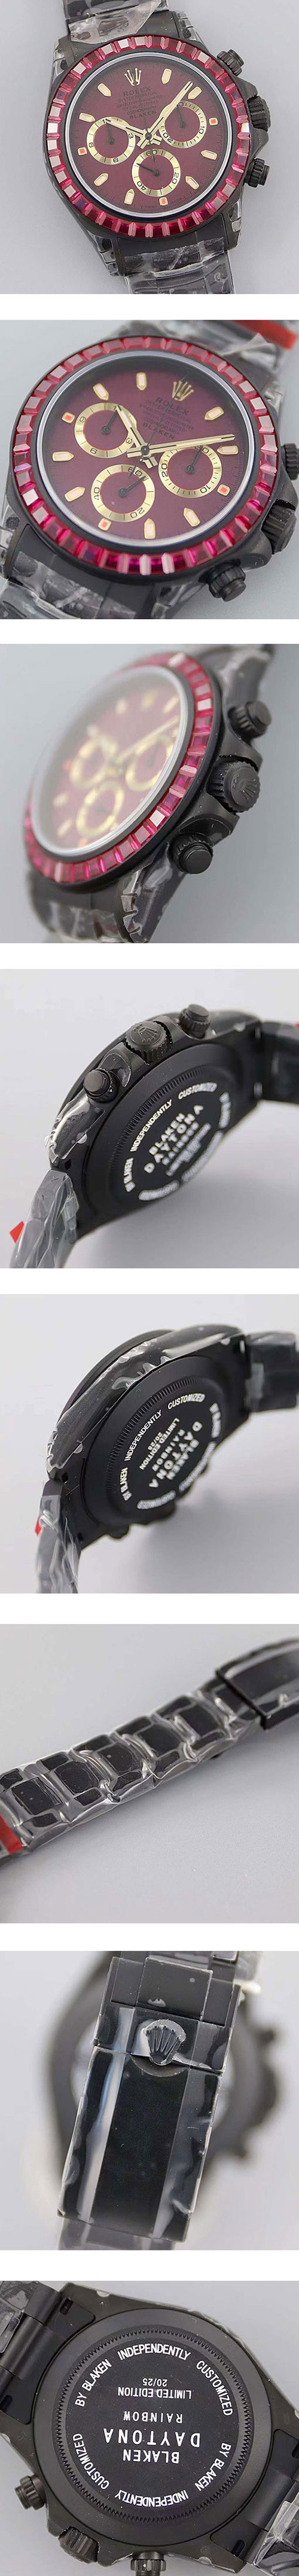 【BLAKEN 腕時計を改造する】ロレックス デイトナコピー時計 116500 